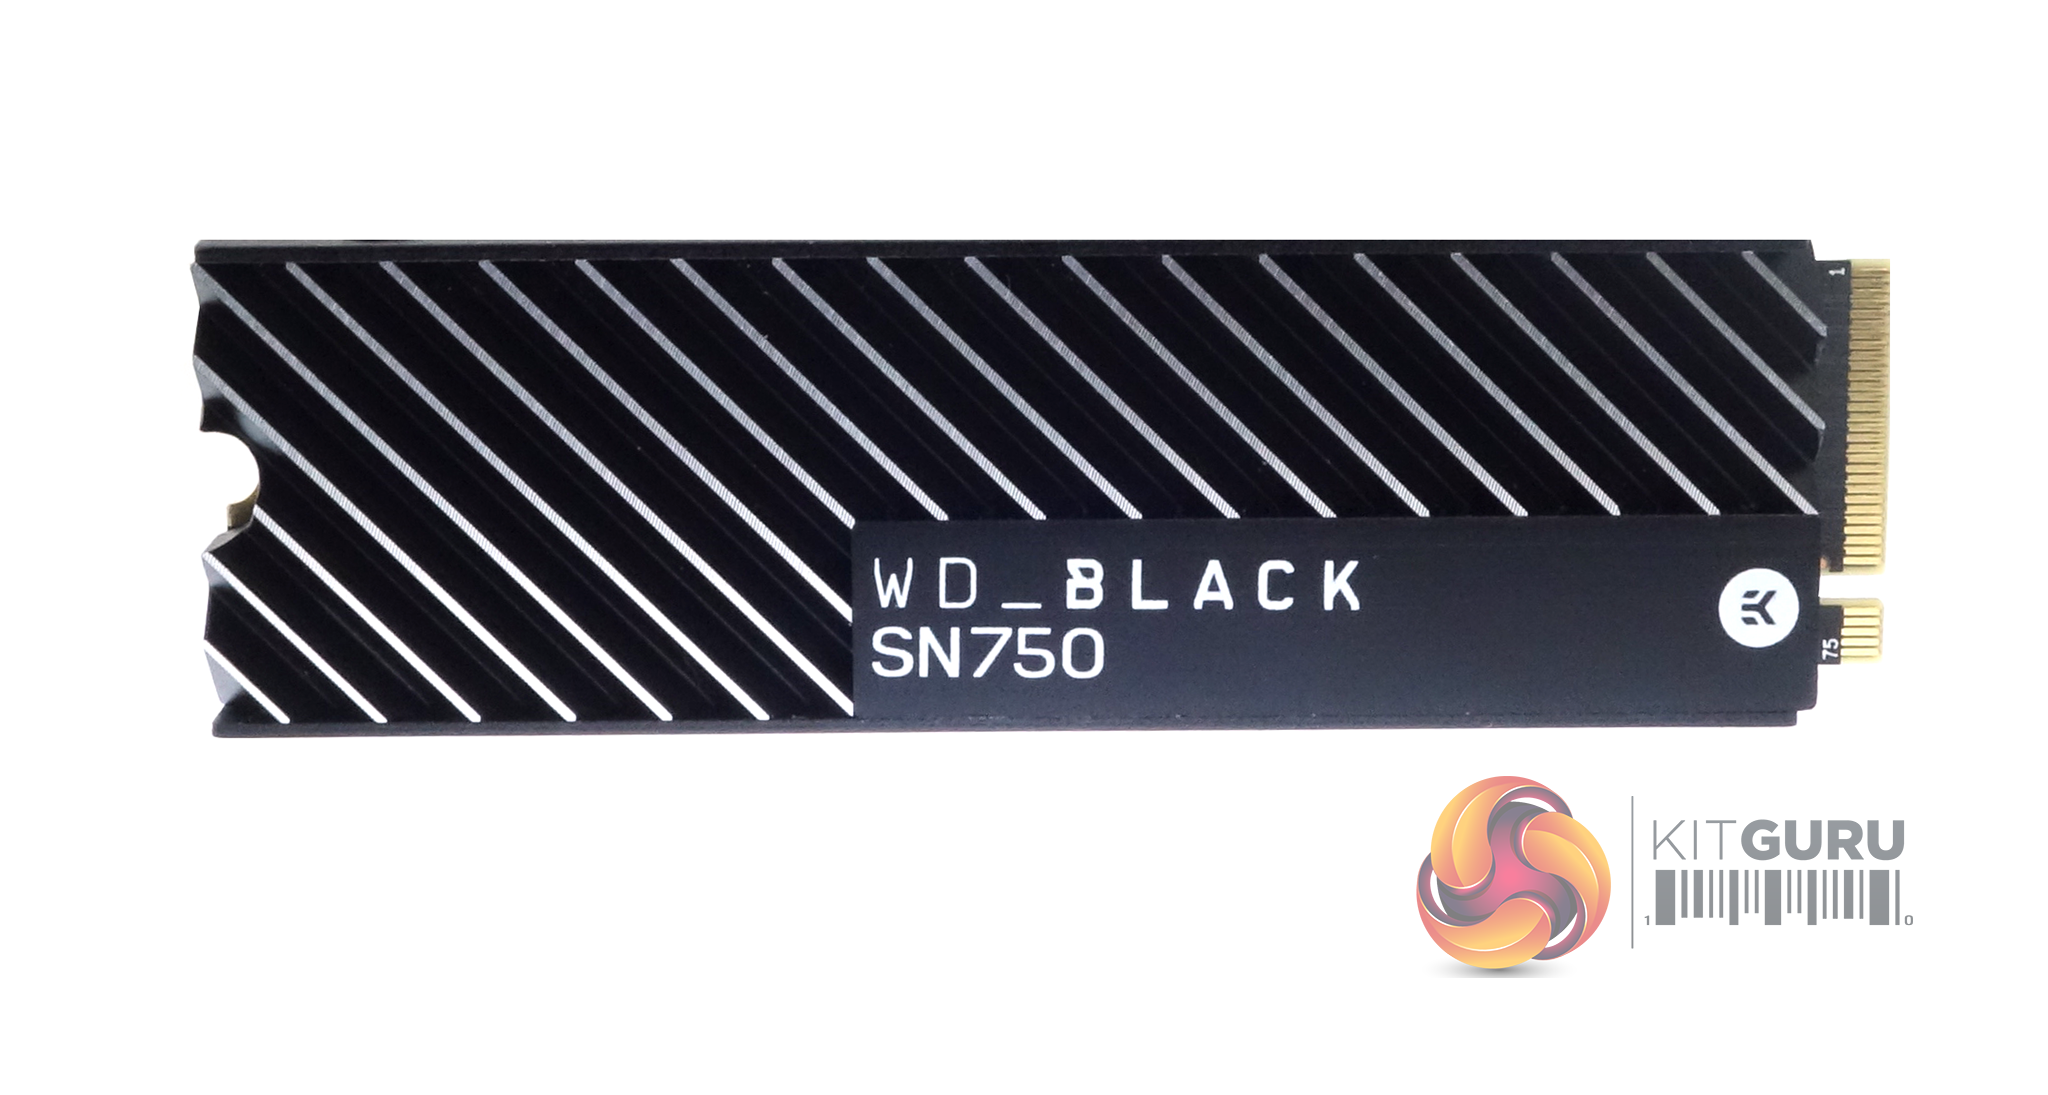 WD Black SN750 1TB with Heatsink (10c improvements!) | KitGuru- Part 2